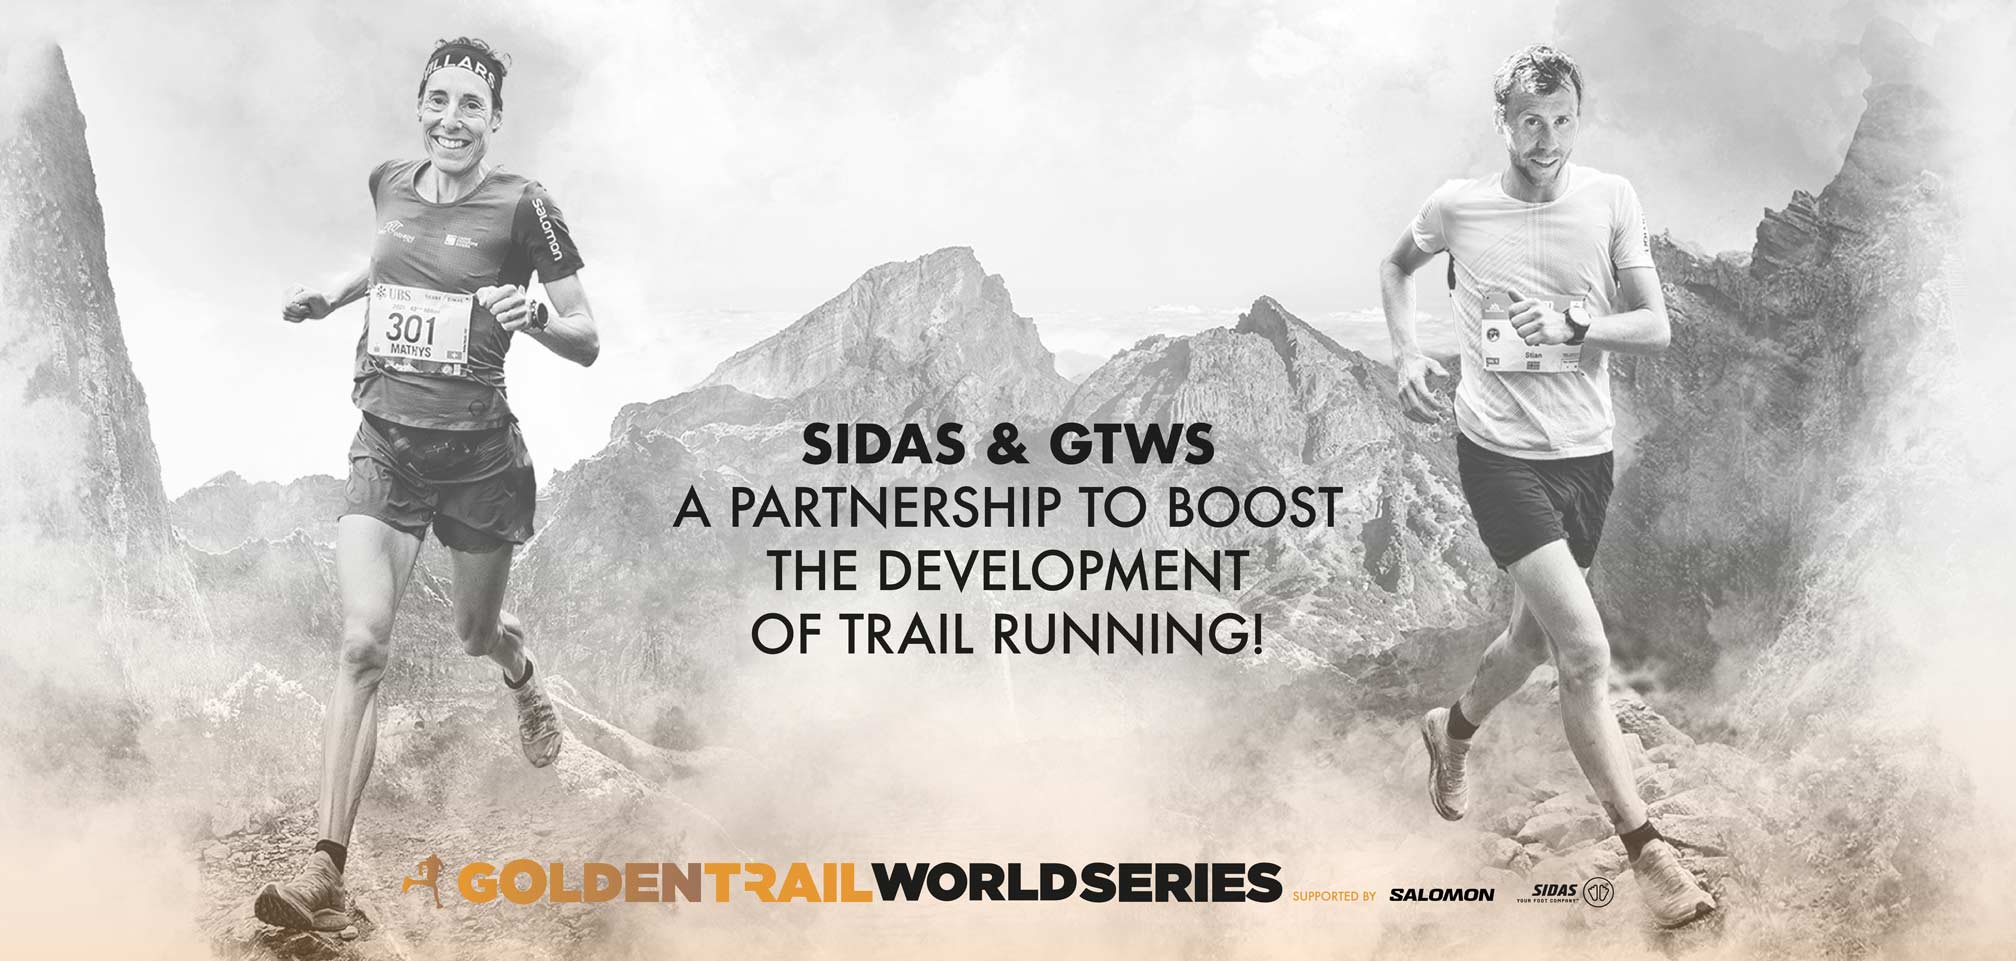 Sidas & les Golden Trail World Series, un partenariat pour booster le développement du trail